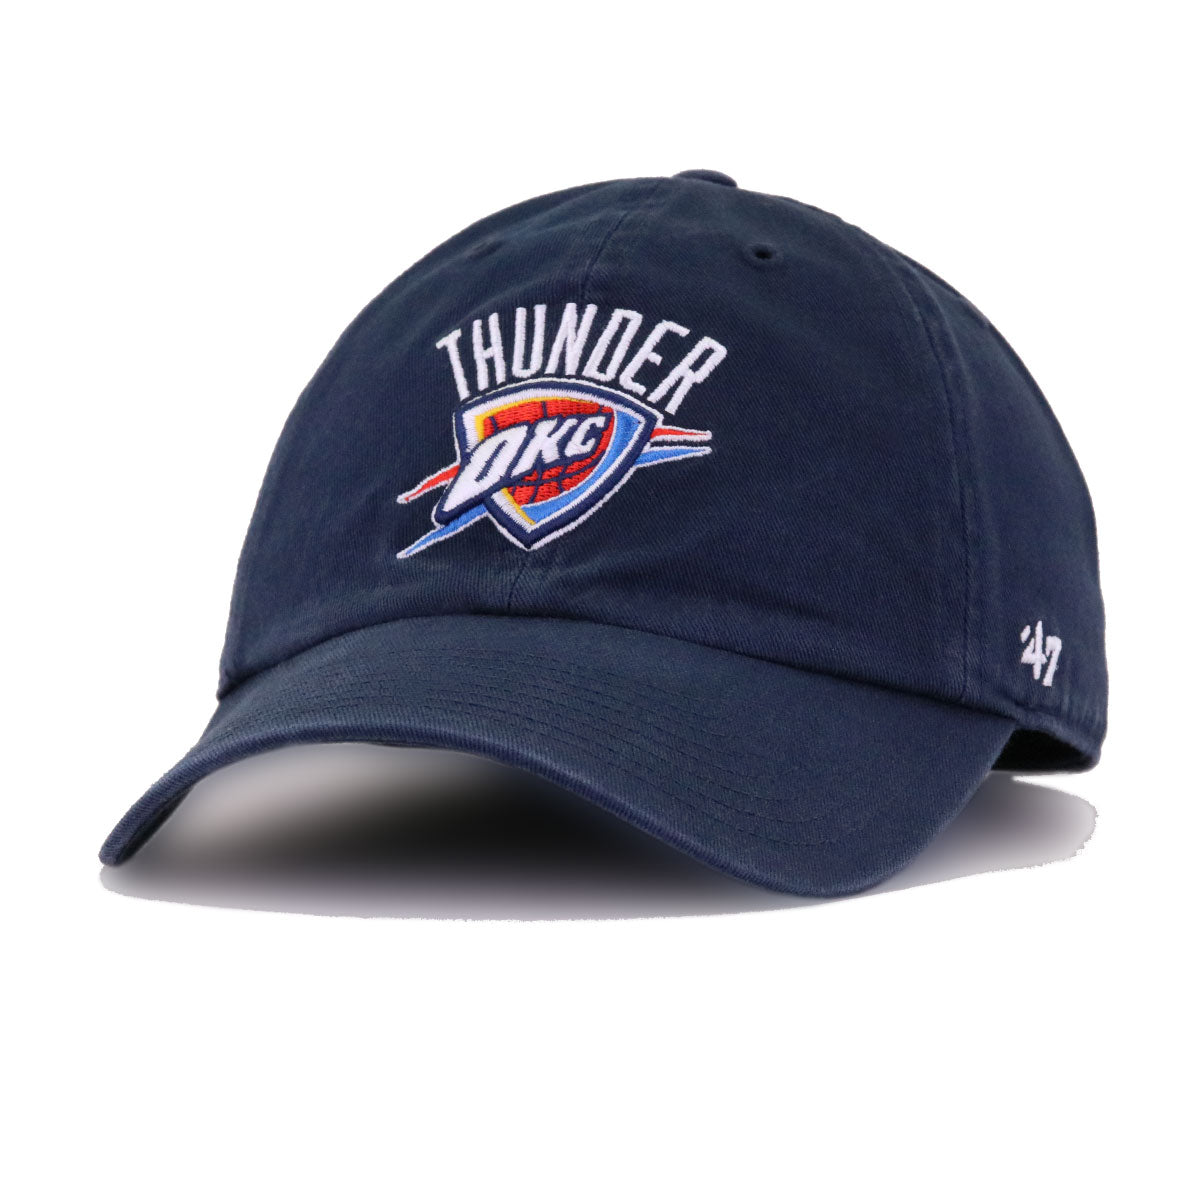 THUNDER '47 BRAND TRUCKER HAT